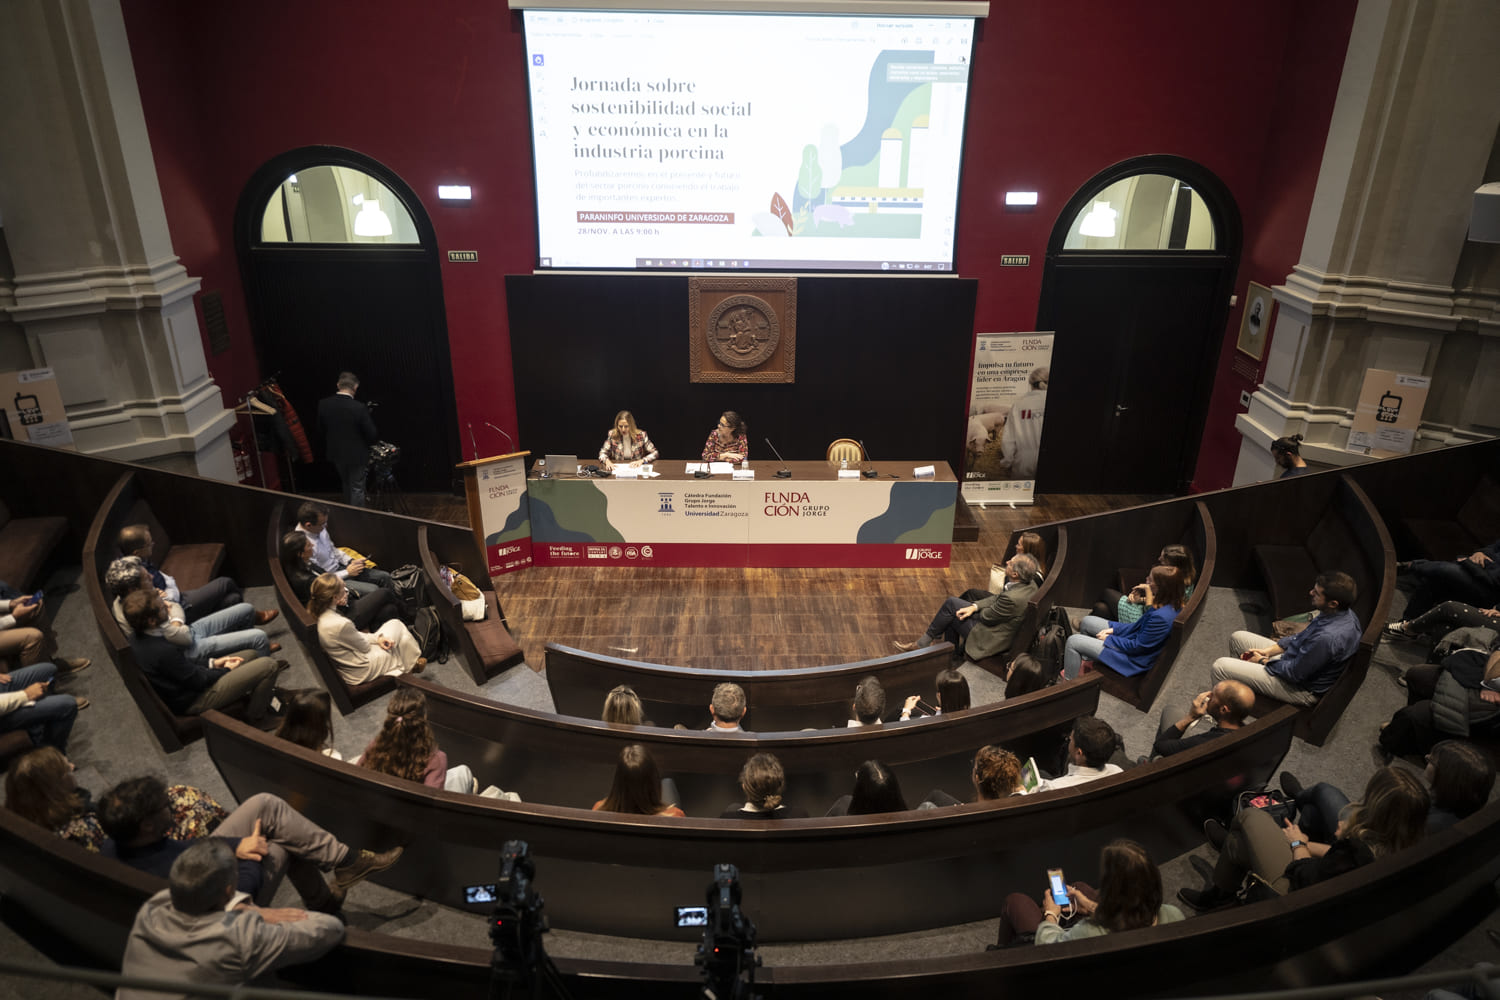 Encuentro en la Universidad de Zaragoza para profundizar en la sostenibilidad socioeconómica en la industria porcina